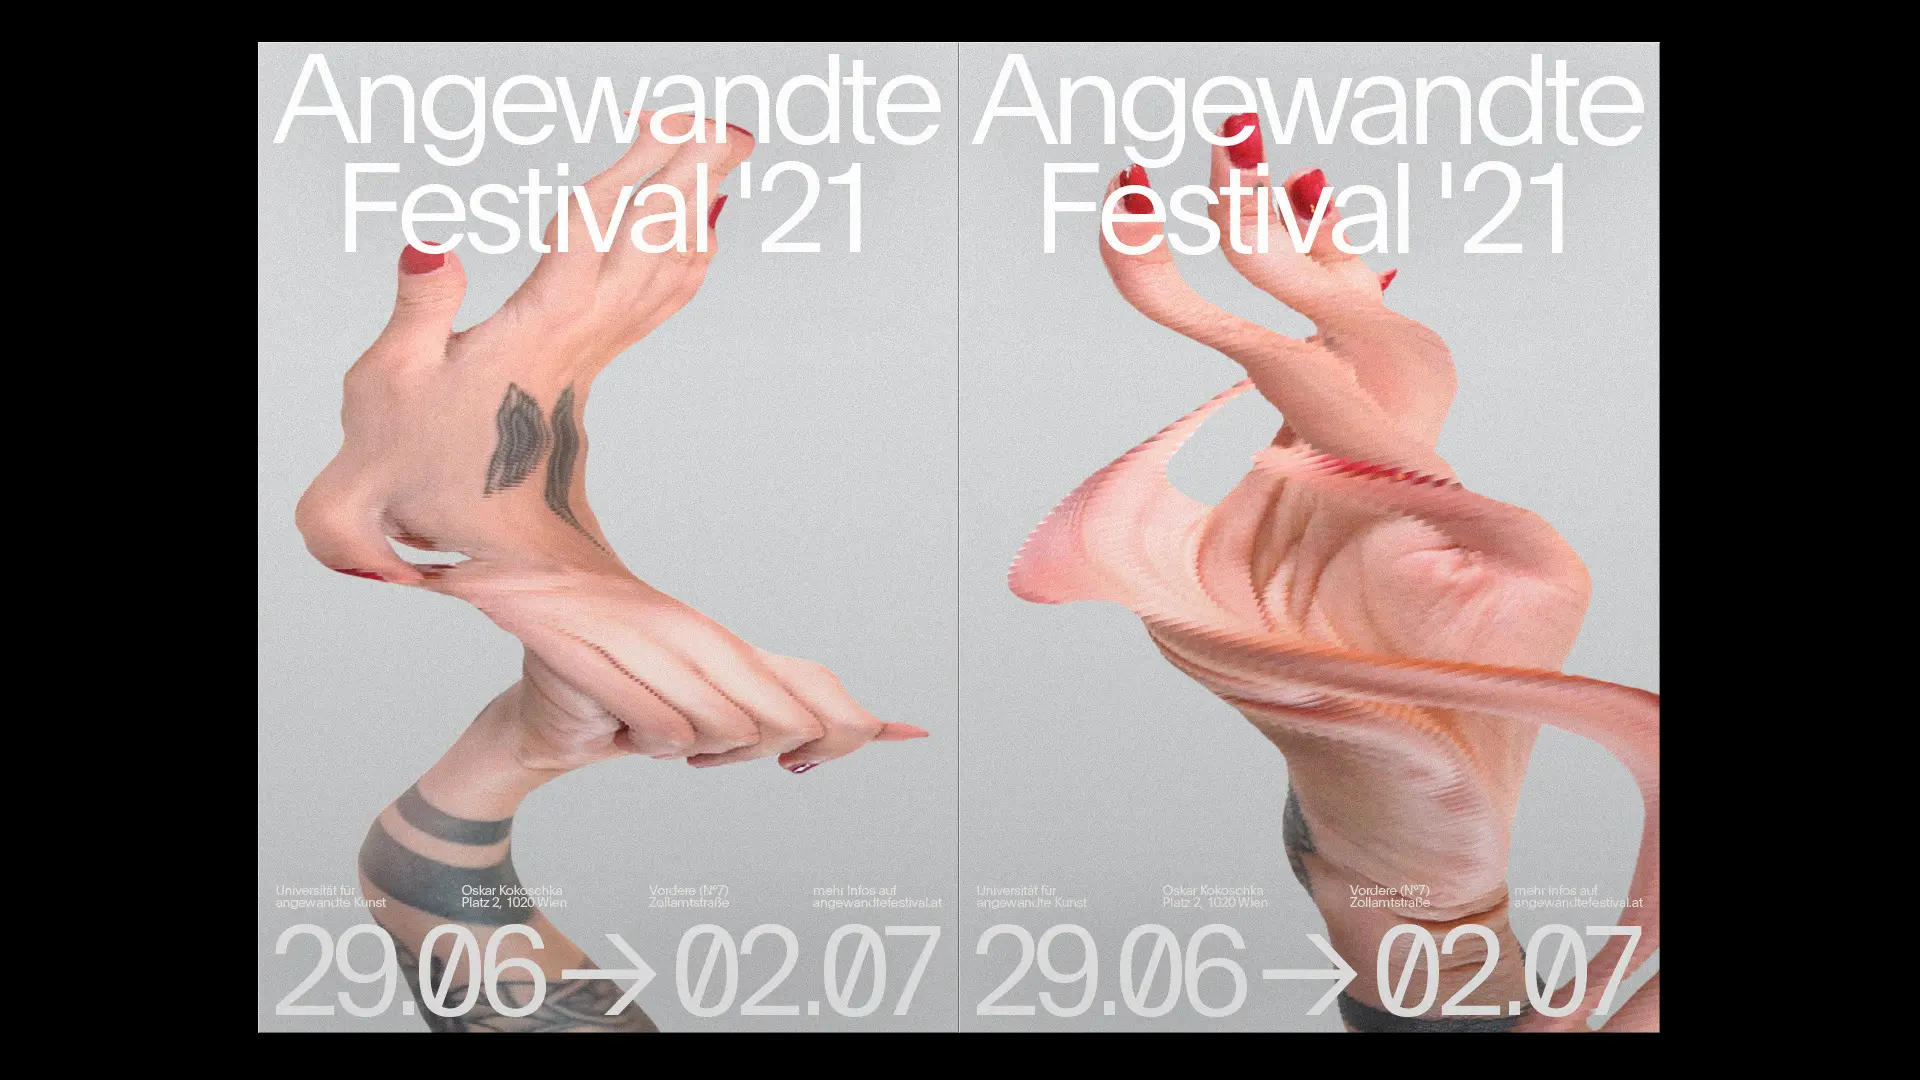 Angewandte Festival 2021 - Franz Mühringer